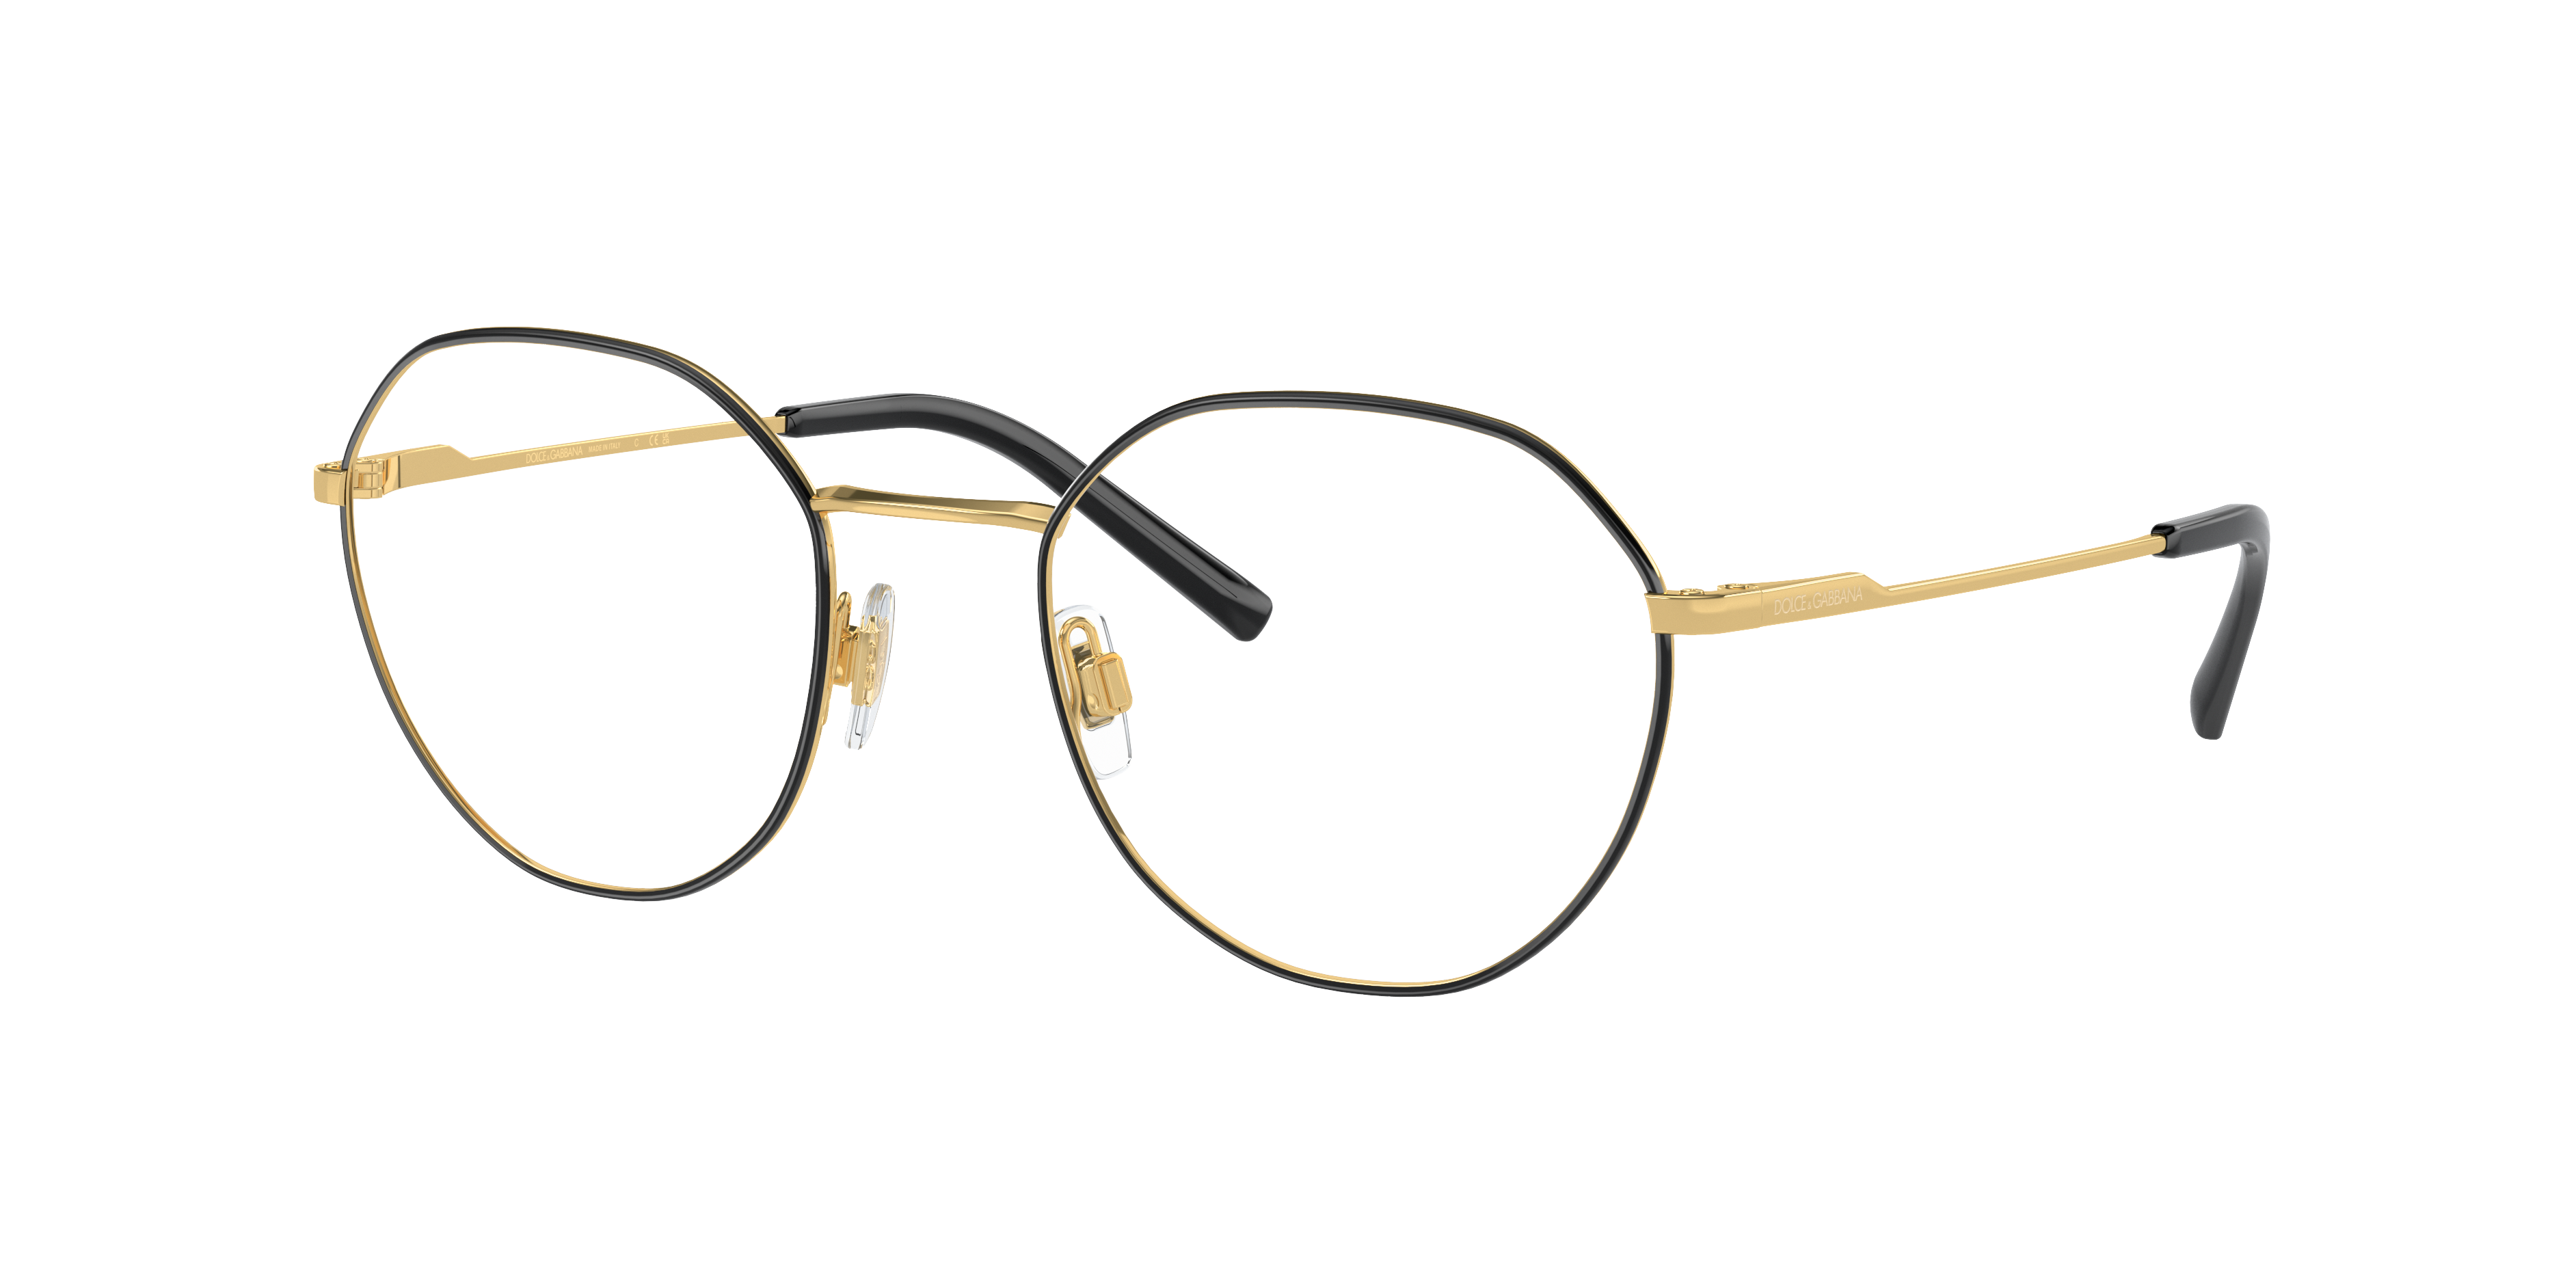 Dolce & Gabbana DG1324 Gold/Matte Black Eyeglasses | Glasses.com ...